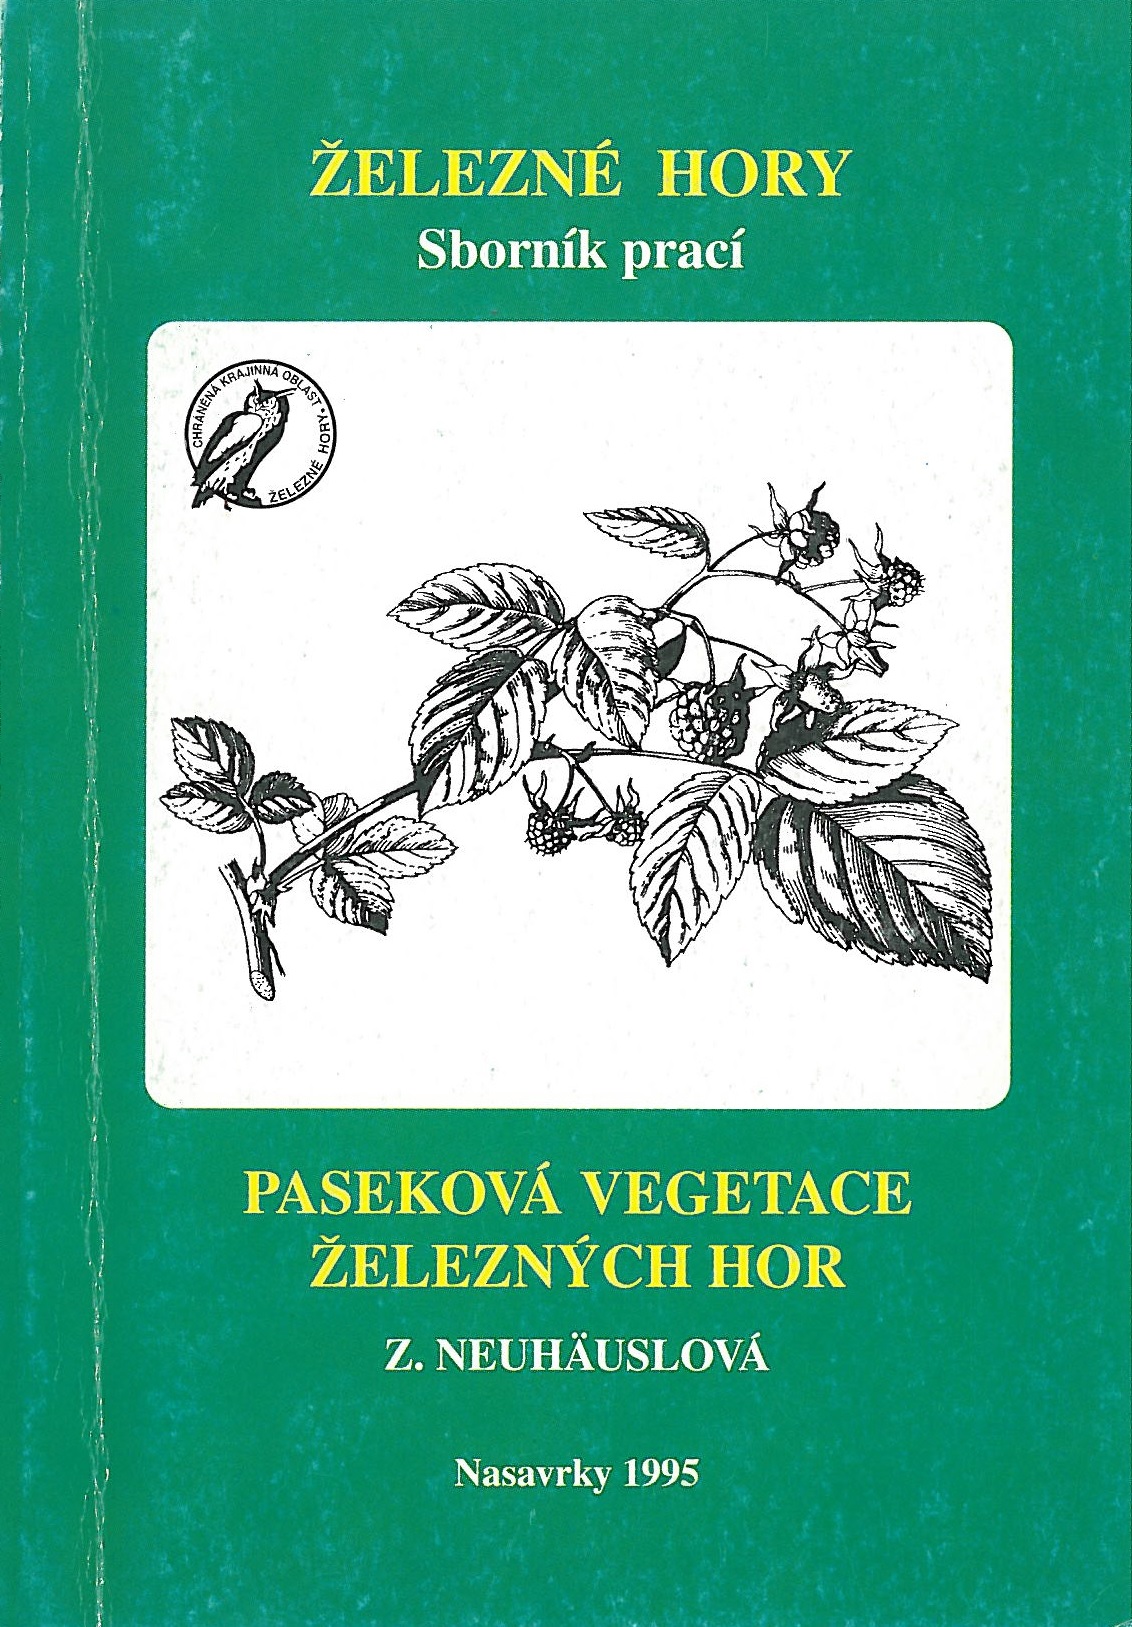 Železné hory, Sborník prací, Paseková vegetace, 1995